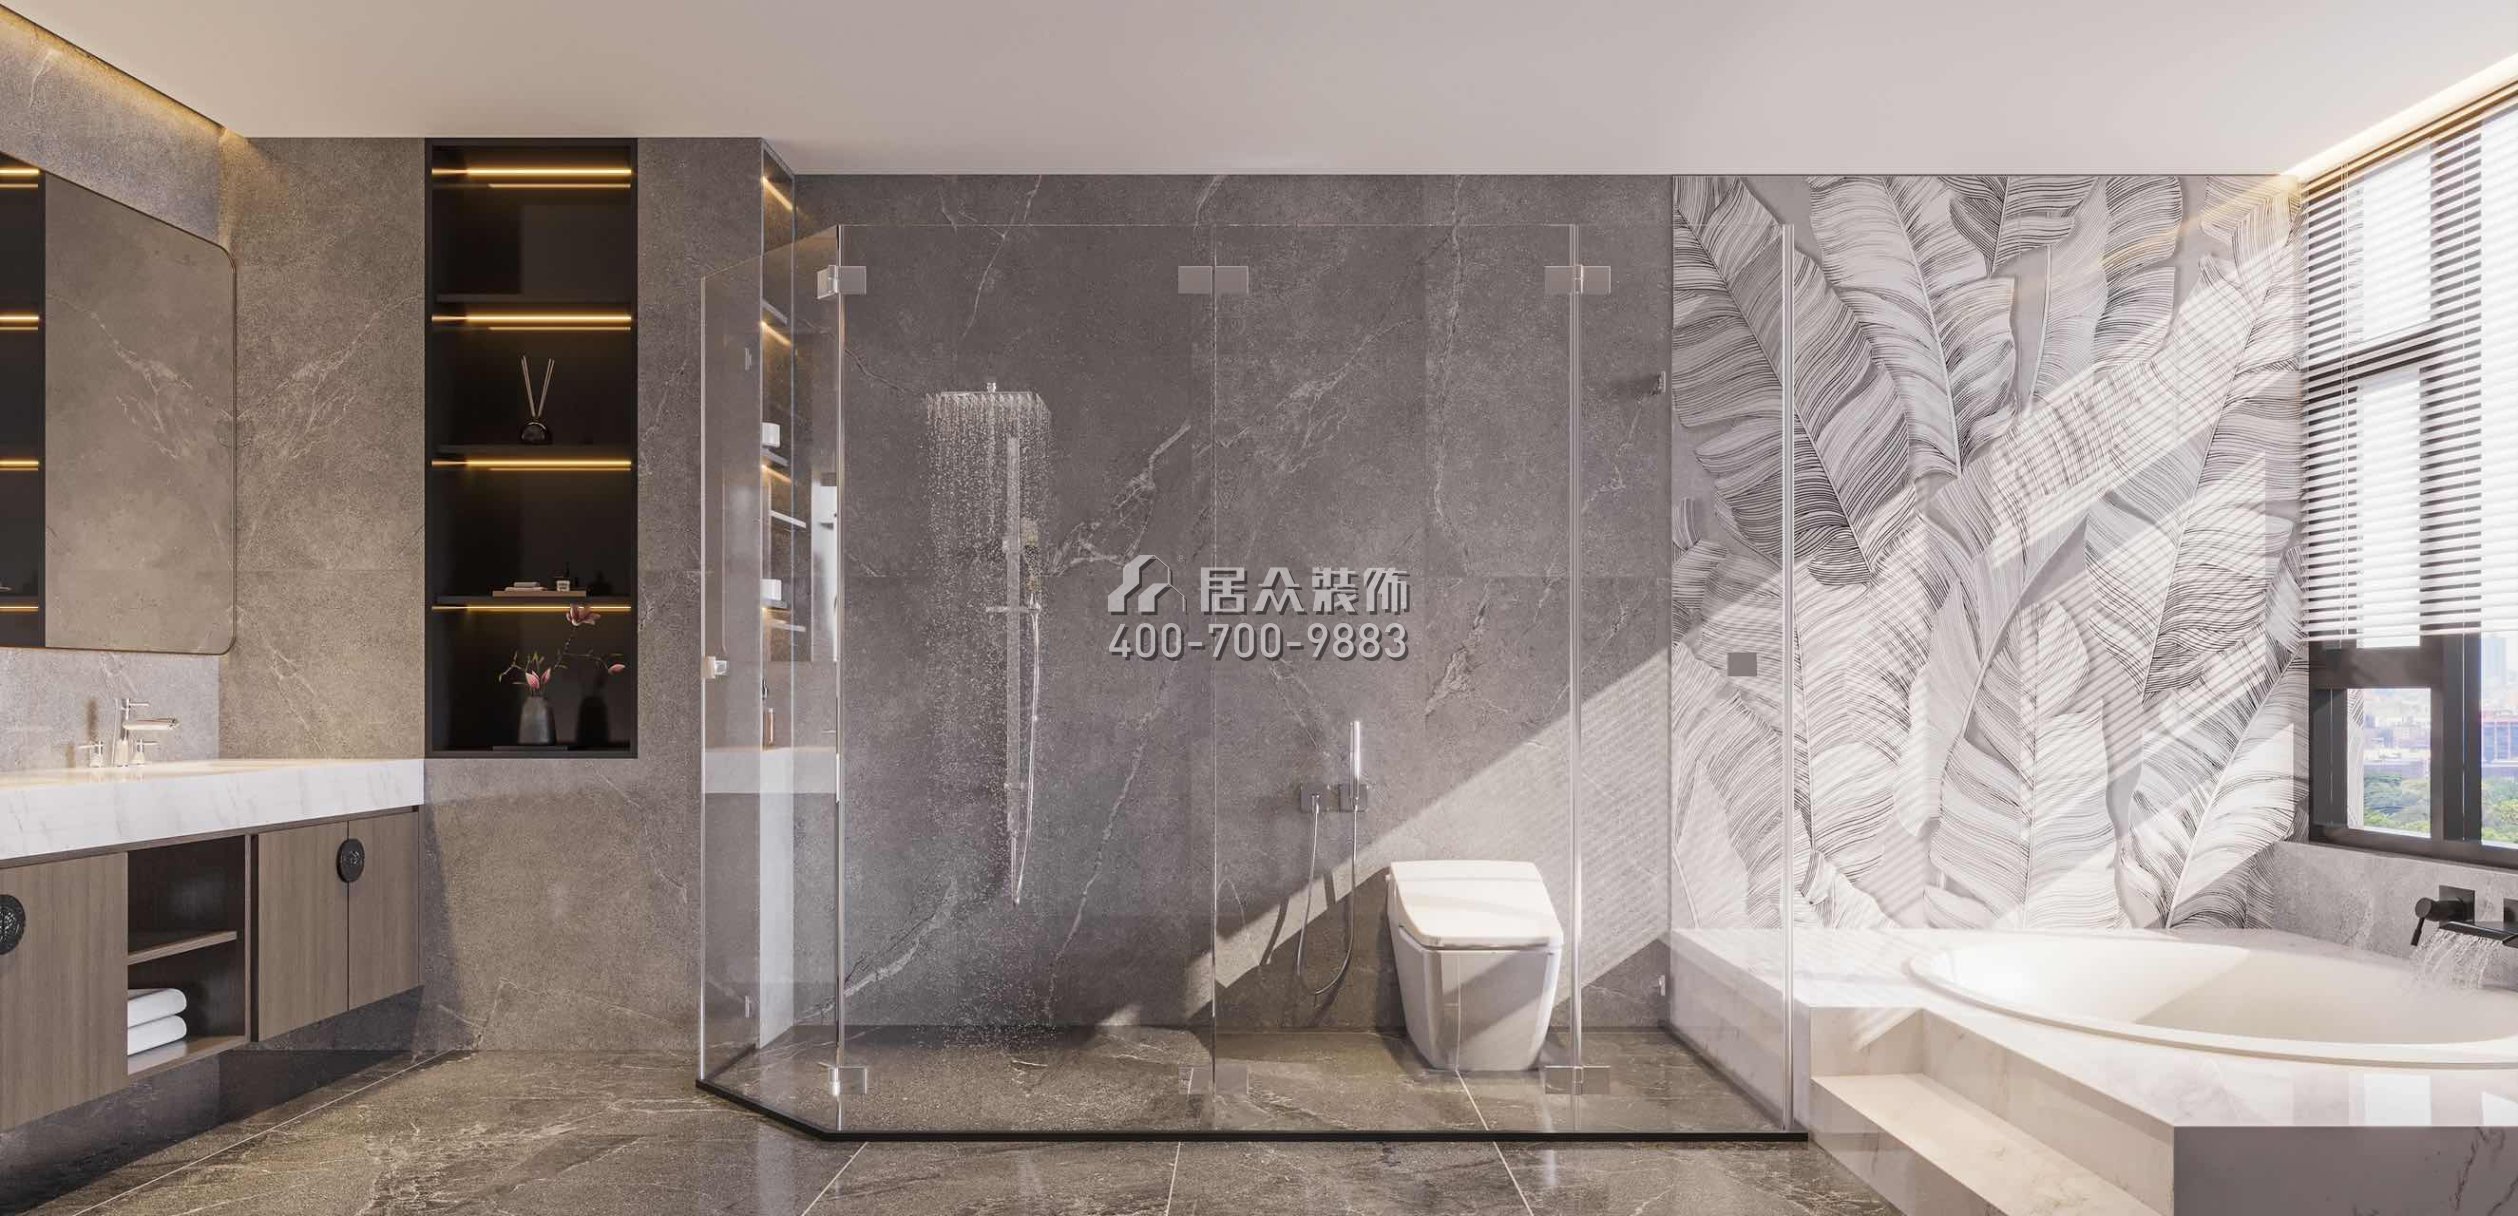 中海湯泉450平方米中式風格別墅戶型衛生間裝修效果圖